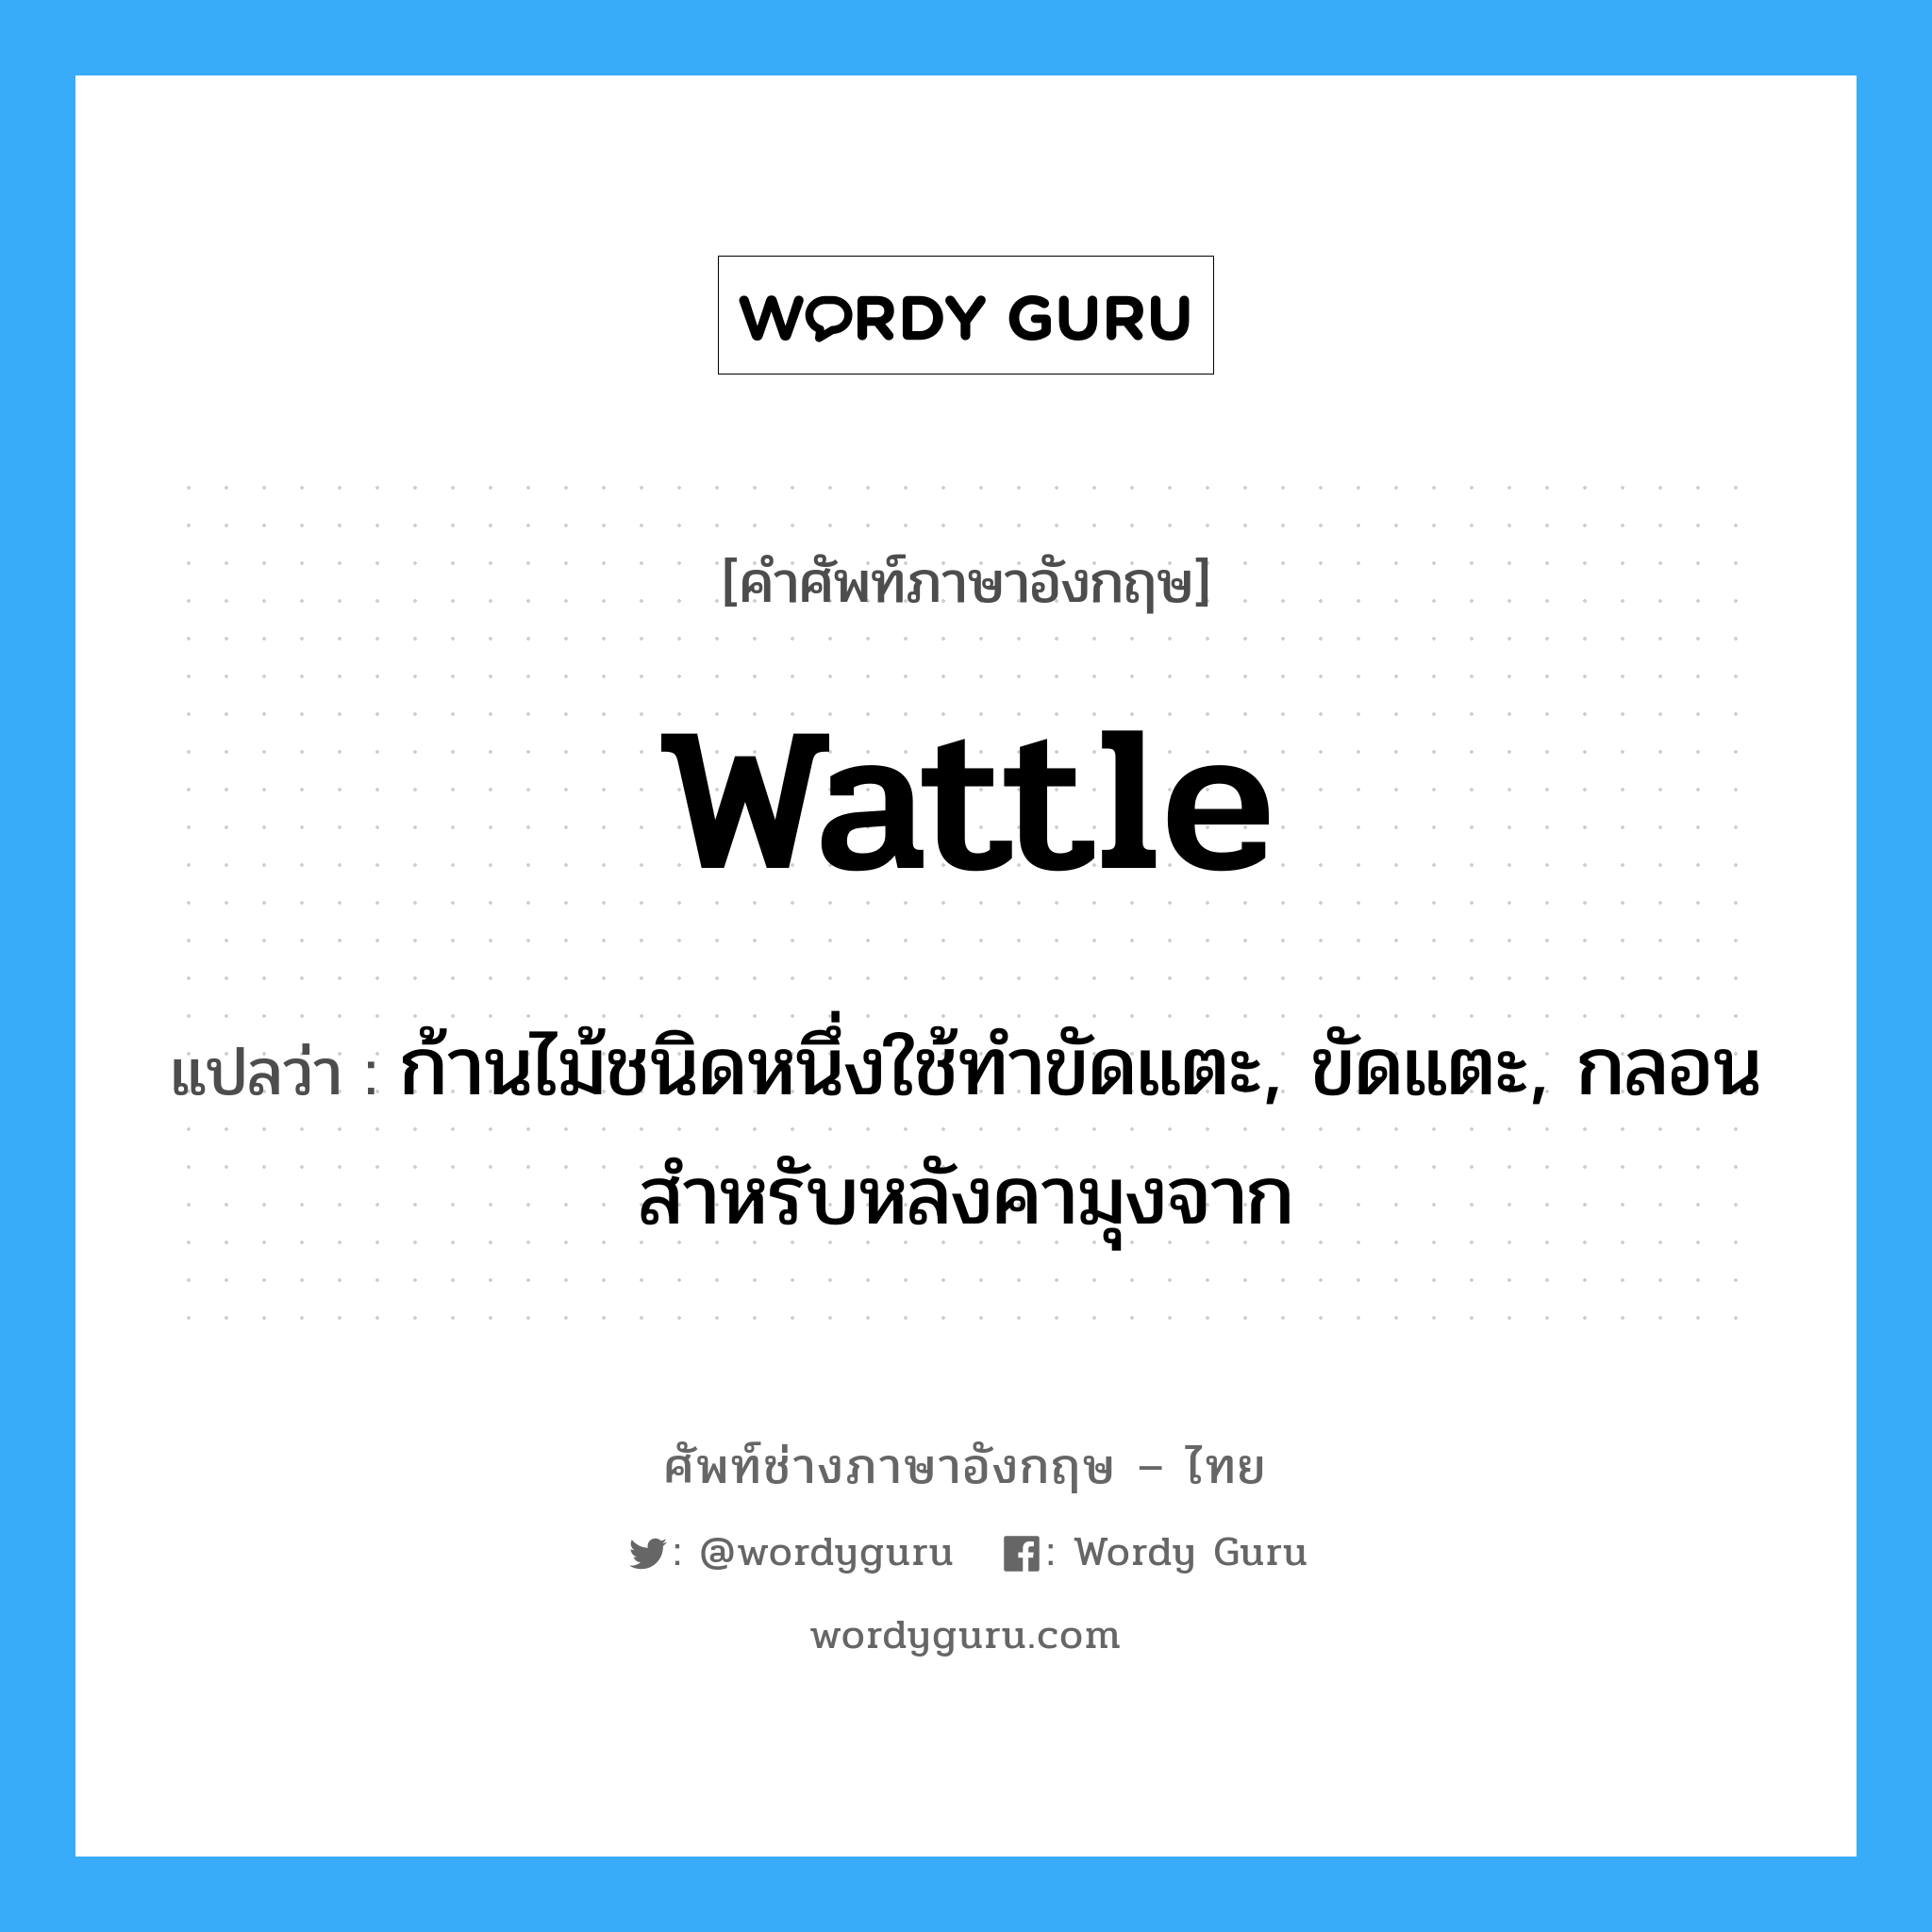 wattle แปลว่า?, คำศัพท์ช่างภาษาอังกฤษ - ไทย wattle คำศัพท์ภาษาอังกฤษ wattle แปลว่า ก้านไม้ชนิดหนึ่งใช้ทำขัดแตะ, ขัดแตะ, กลอนสำหรับหลังคามุงจาก